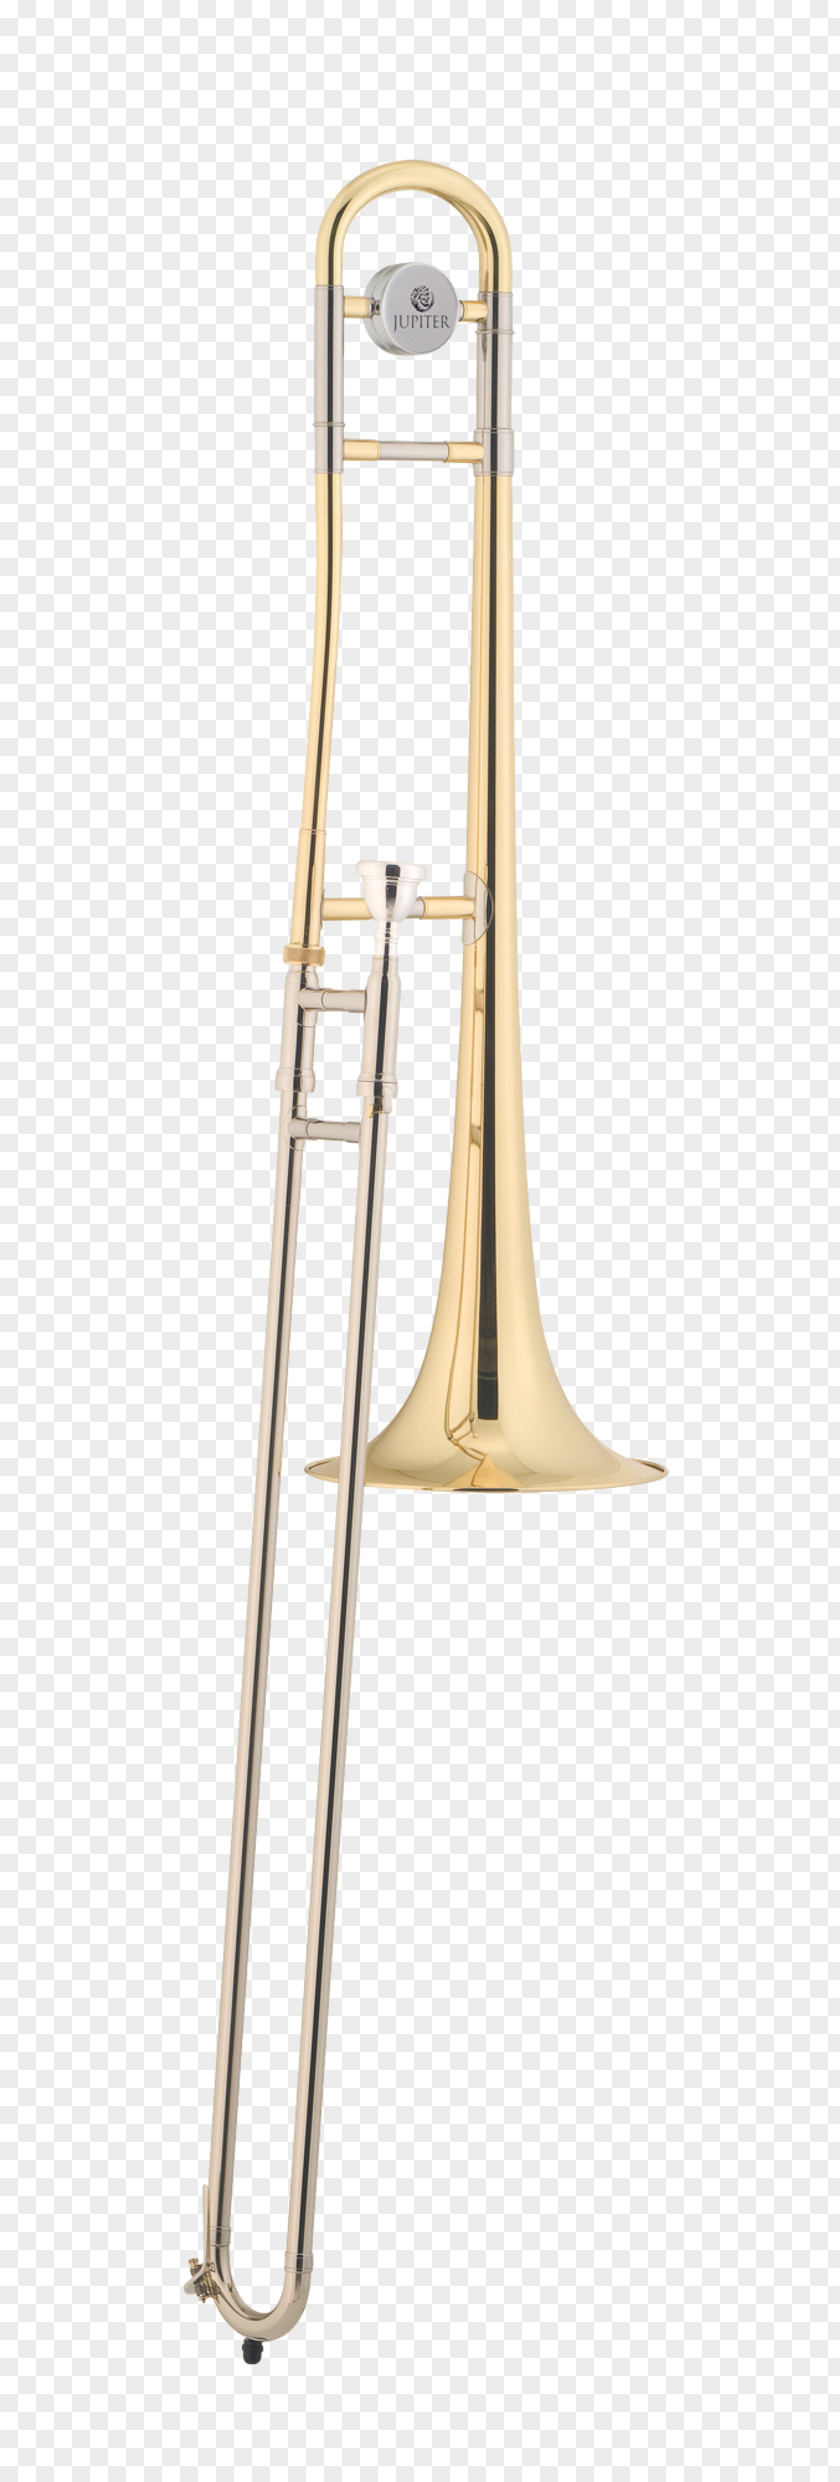 Trombone Musimiet Brass Instruments Musical Mellophone Flugelhorn PNG